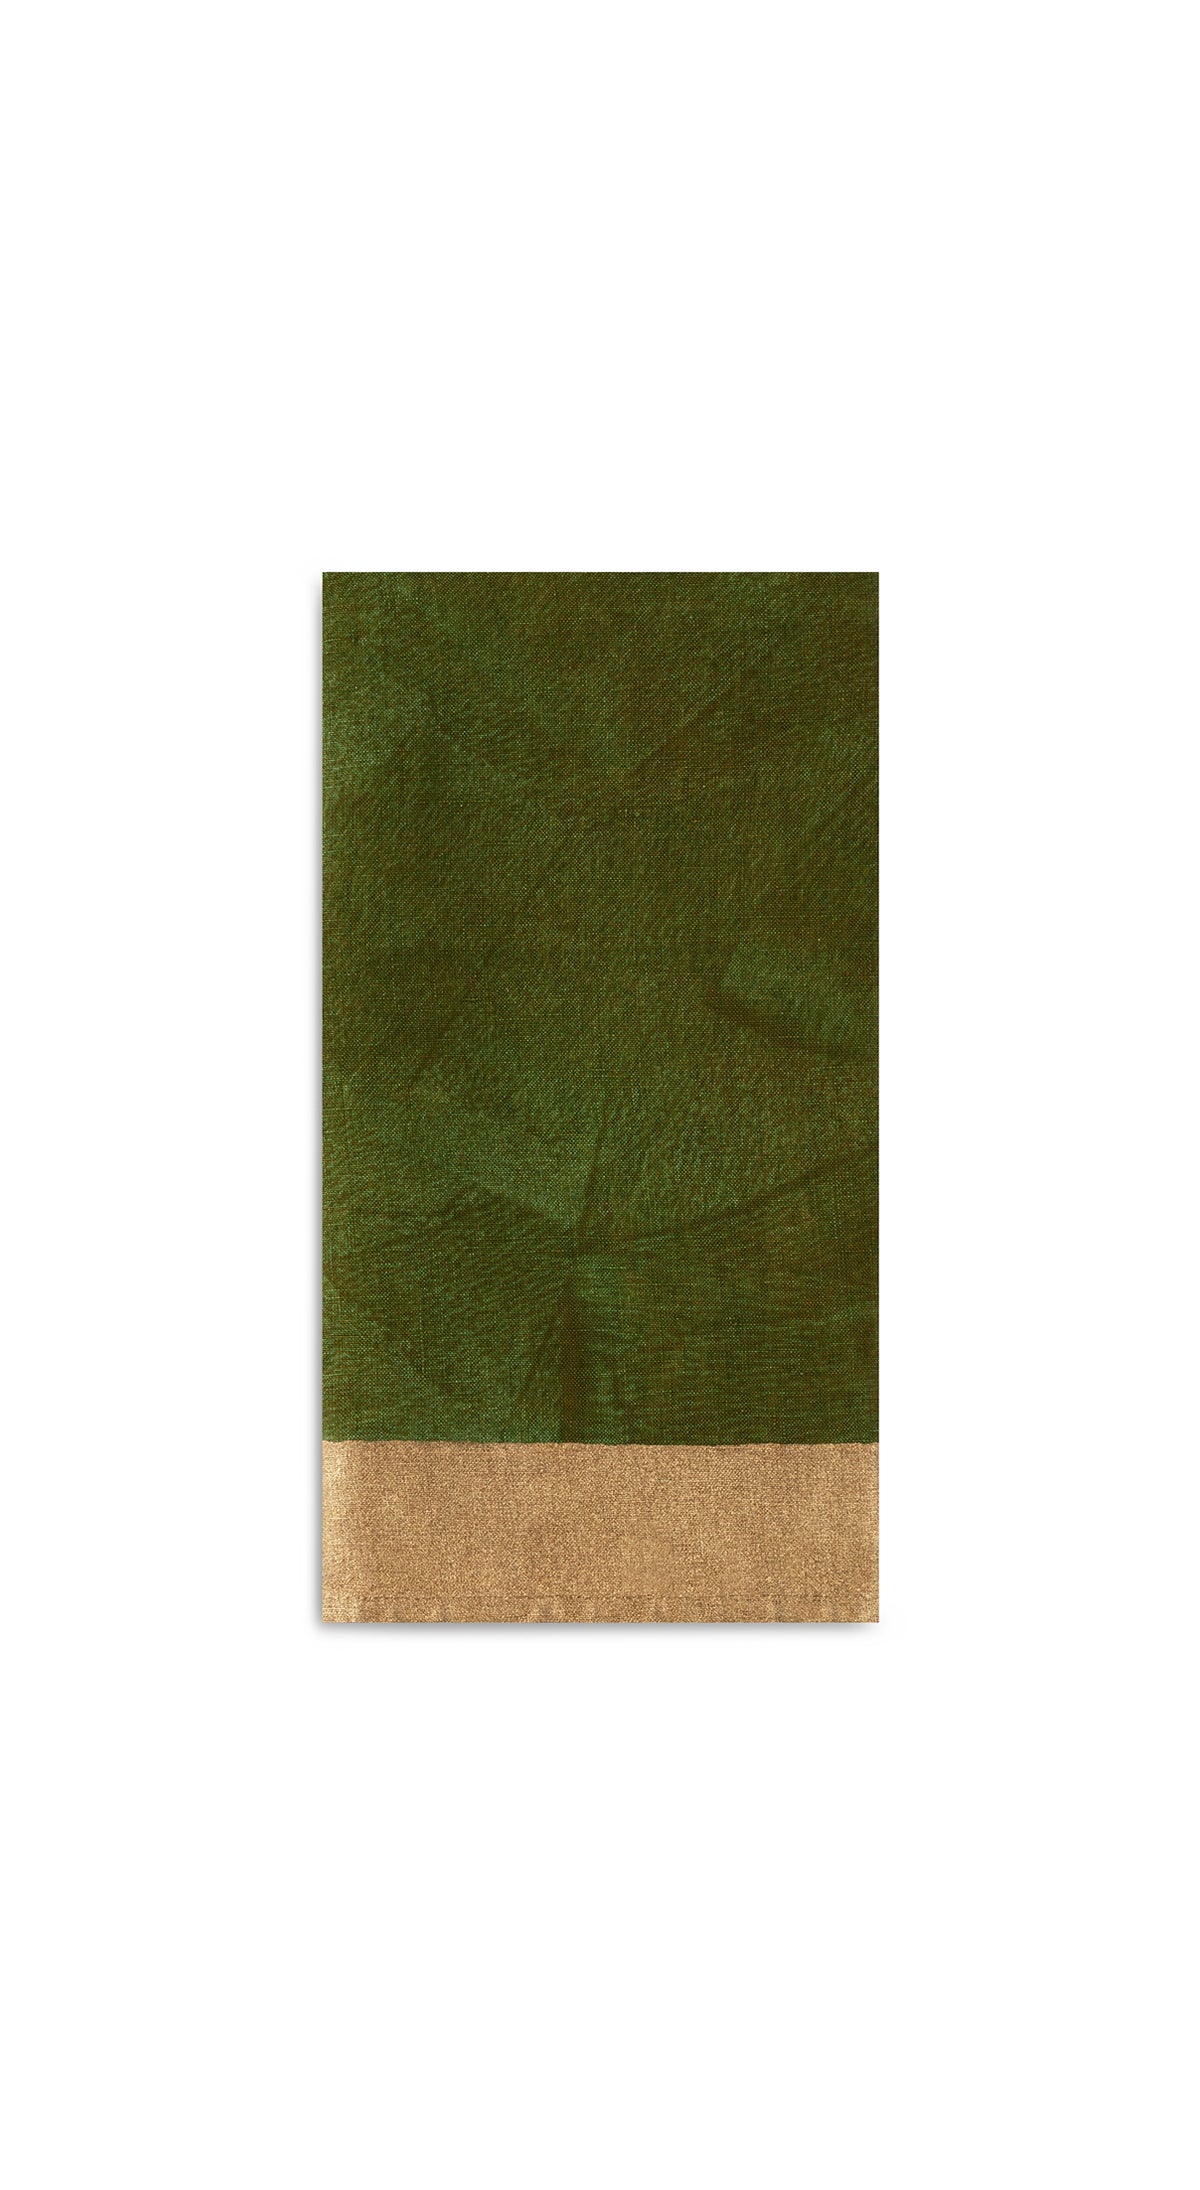 Gold Edge Linen Napkin in Avocado Green, 50x50cm